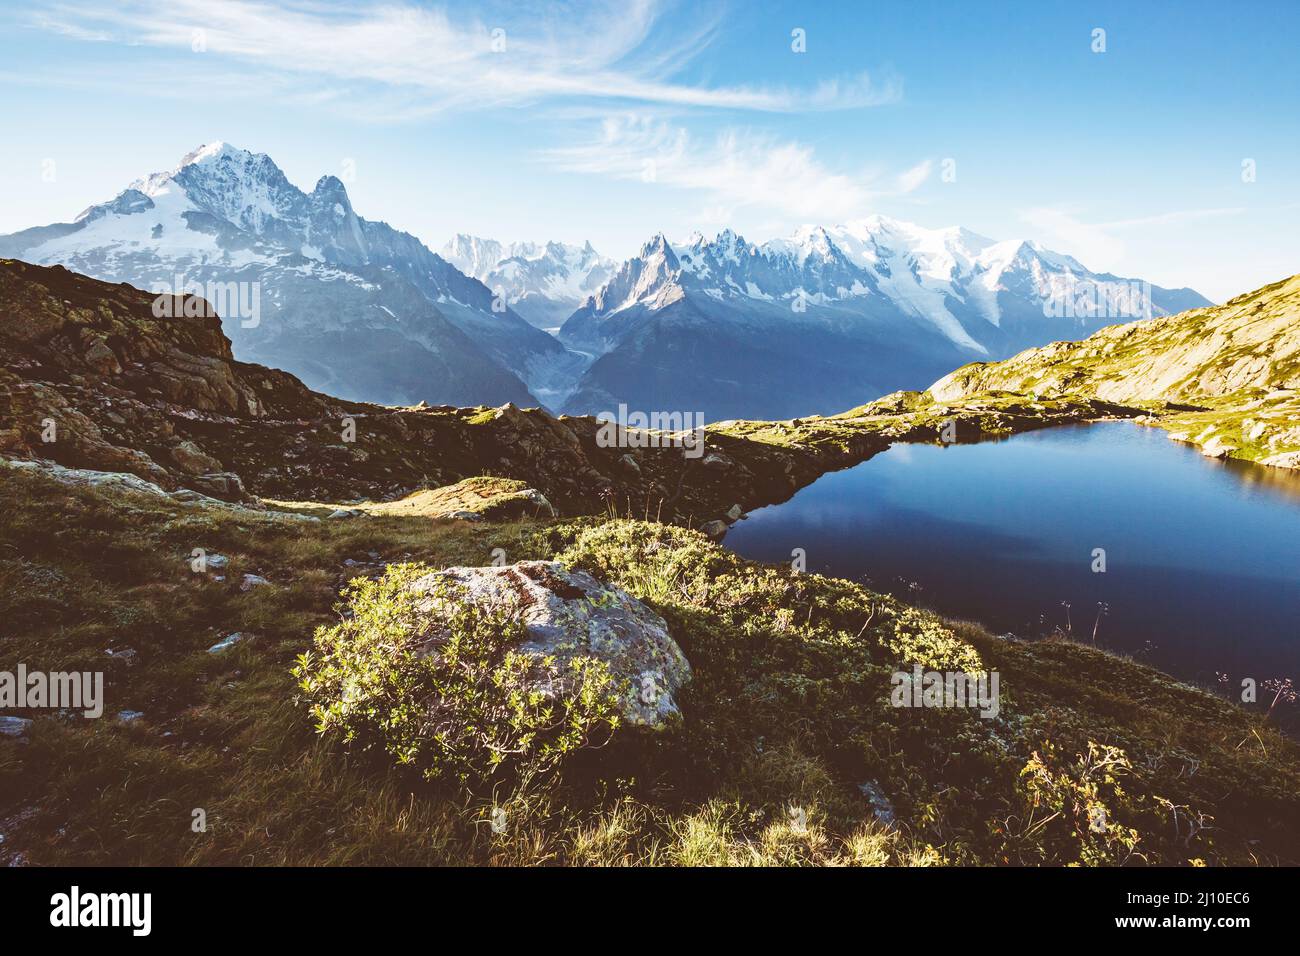 Vue sur le glacier du Mont blanc et le lac blanc. Scène parfaite et magnifique. Emplacement place Réserve naturelle Aiguilles Rouges, Alpes Graanes, France, Europ Banque D'Images